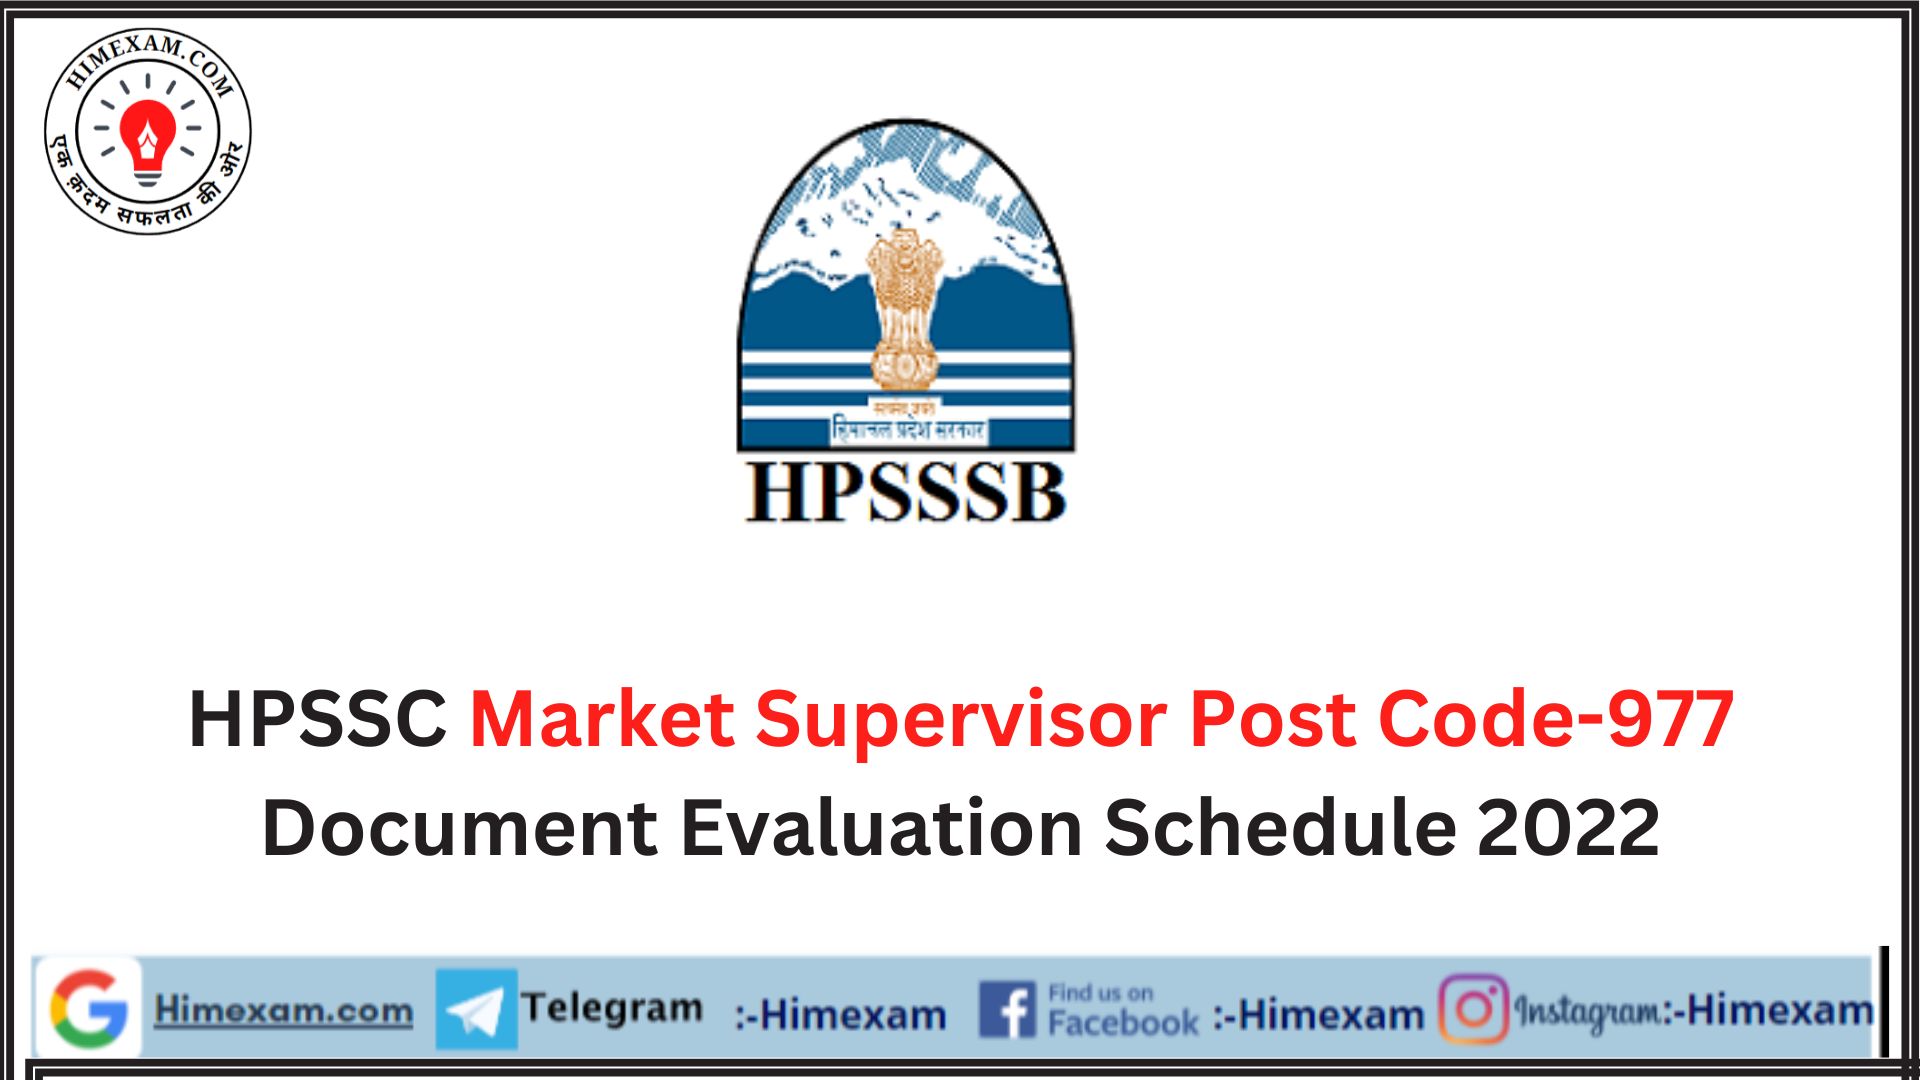 HPSSC Market Supervisor Post Code-977 Document Evaluation Schedule 2022